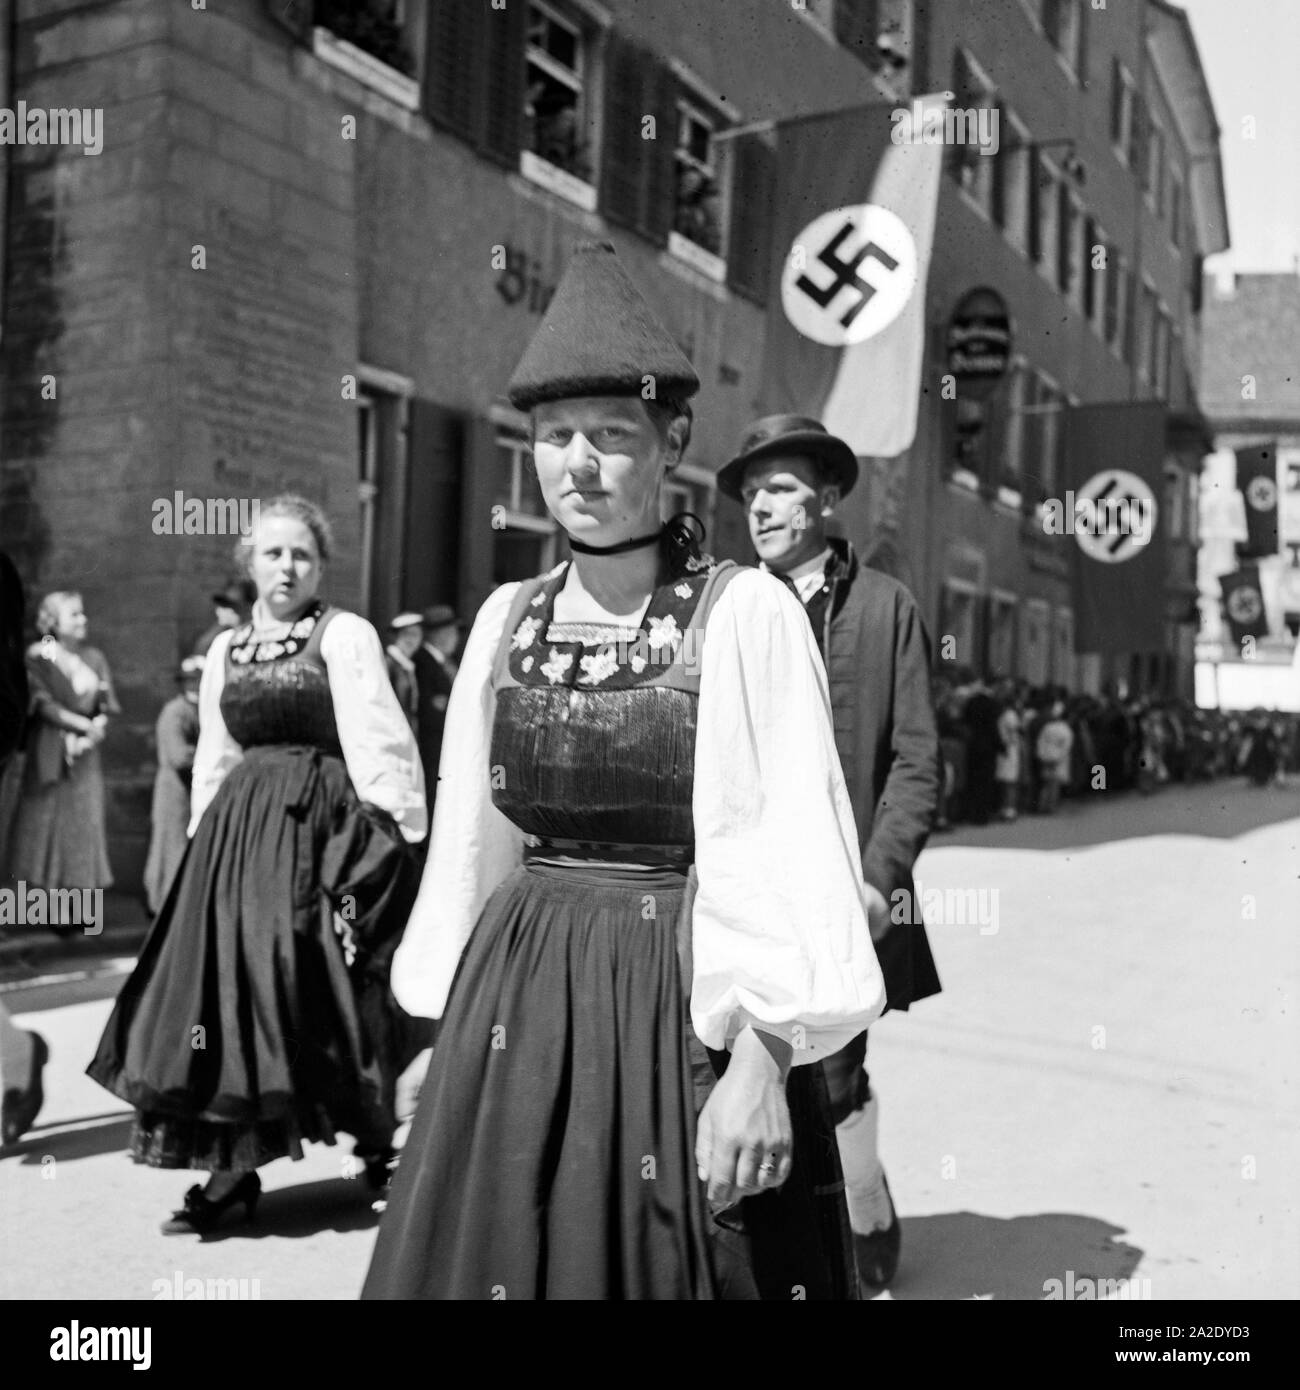 Trachtenumzug durch die Straßen von Konstanz, Deutschland 1930er Jahre. Traditinal costume parade through the streets of Constance, Germany 1930s. Stock Photo